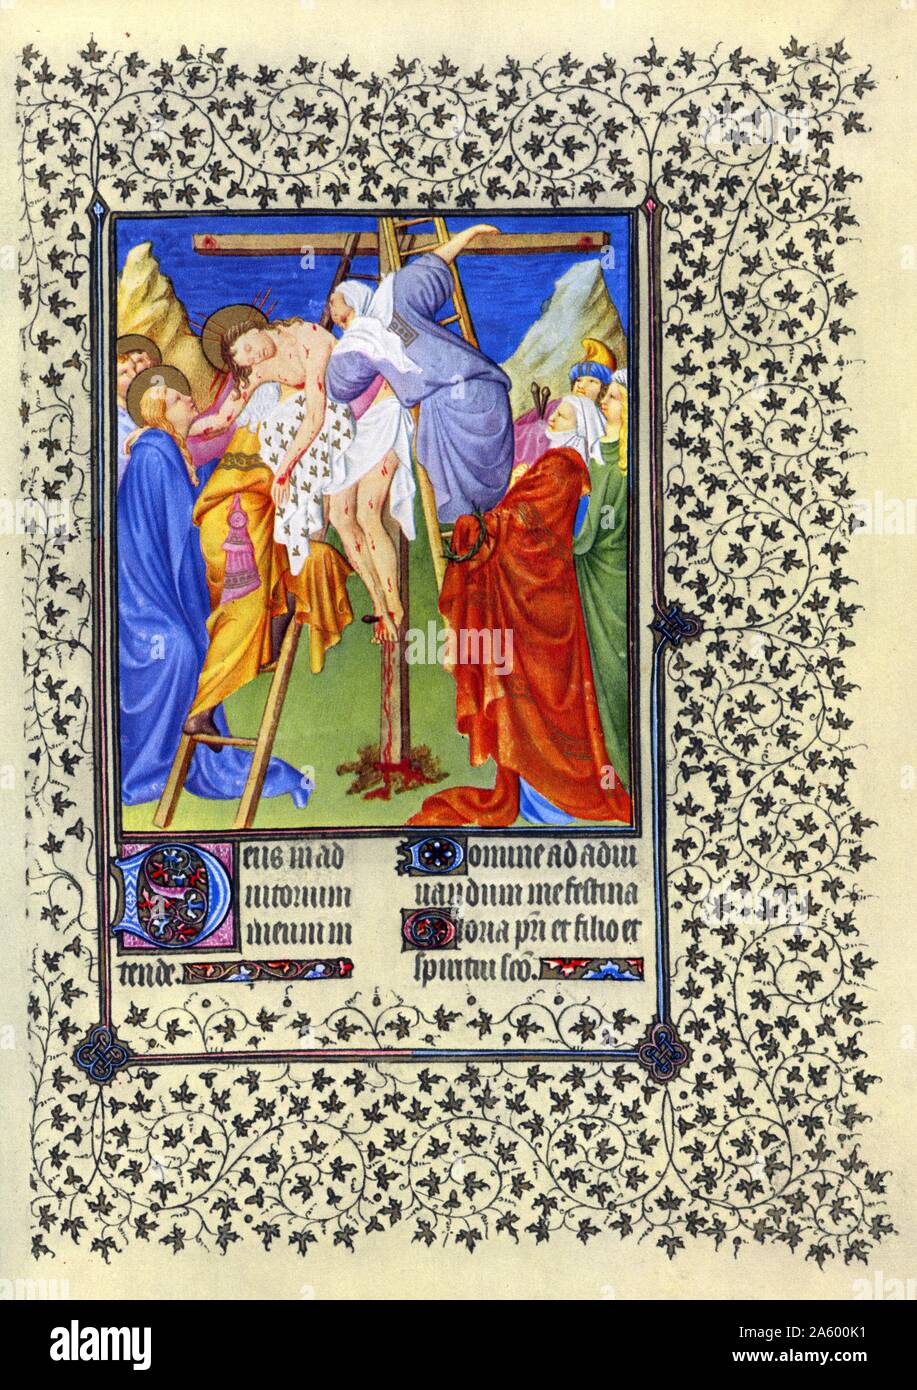 Darstellung der Kreuzabnahme von Belles Heures von Jean de France, Duc de Berry (schöne Stunden) eine frühe 15. Jahrhundert illuminierte Handschrift Buch von Stunden Beleuchtung. Vom 15. Jahrhundert Stockfoto